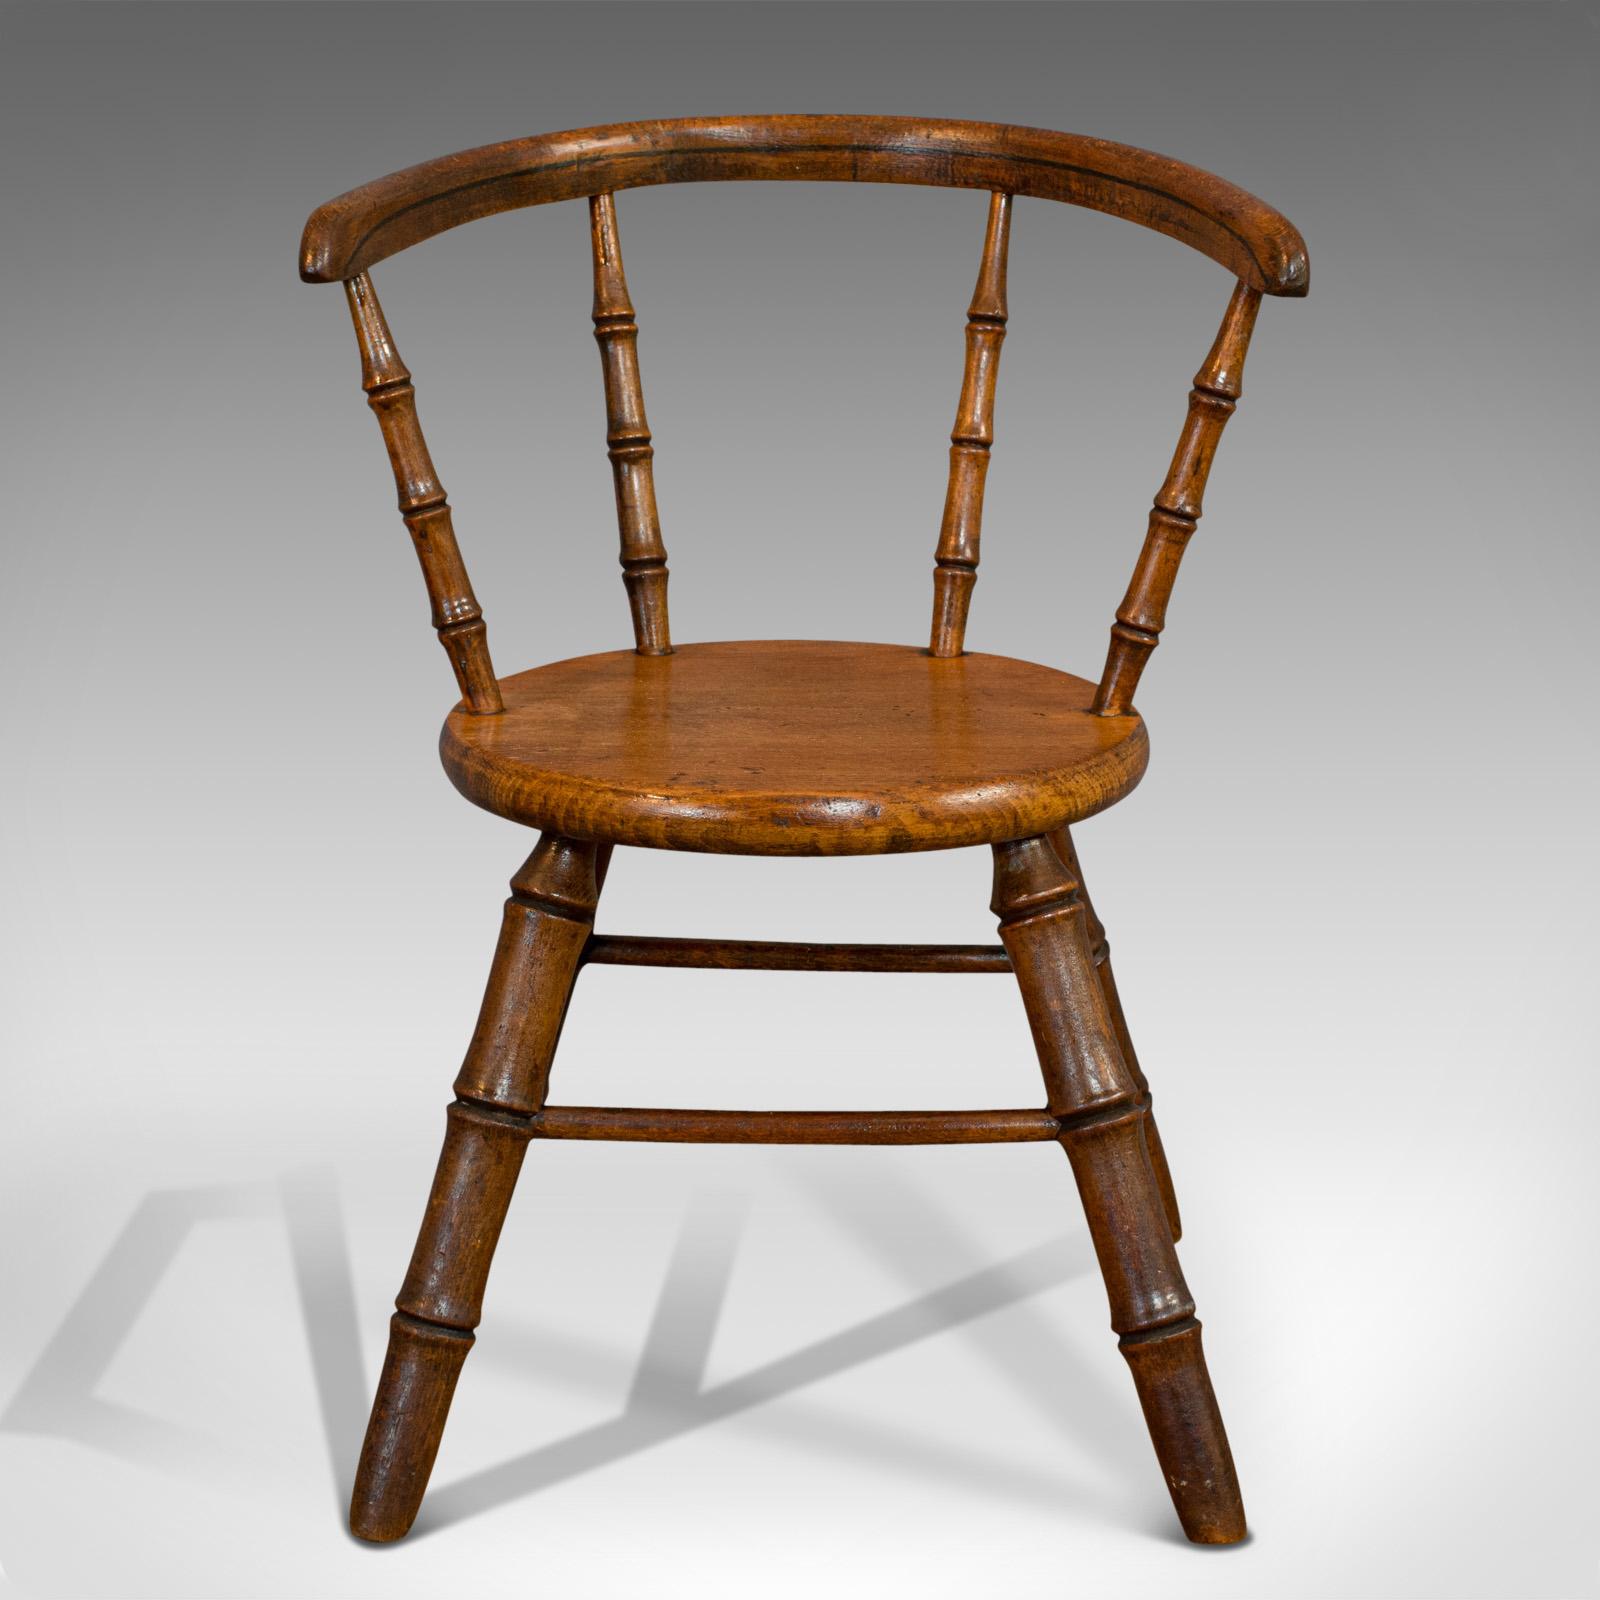 Dies ist ein kleiner antiker Windsor-Stuhl. Ein englisches Lehrlingsstück aus Eiche, das an die High Wycombe-Schule der Miniaturmöbel erinnert und aus der viktorianischen Zeit um 1870 stammt. 

Hervorragender Stuhl in der Miniatur